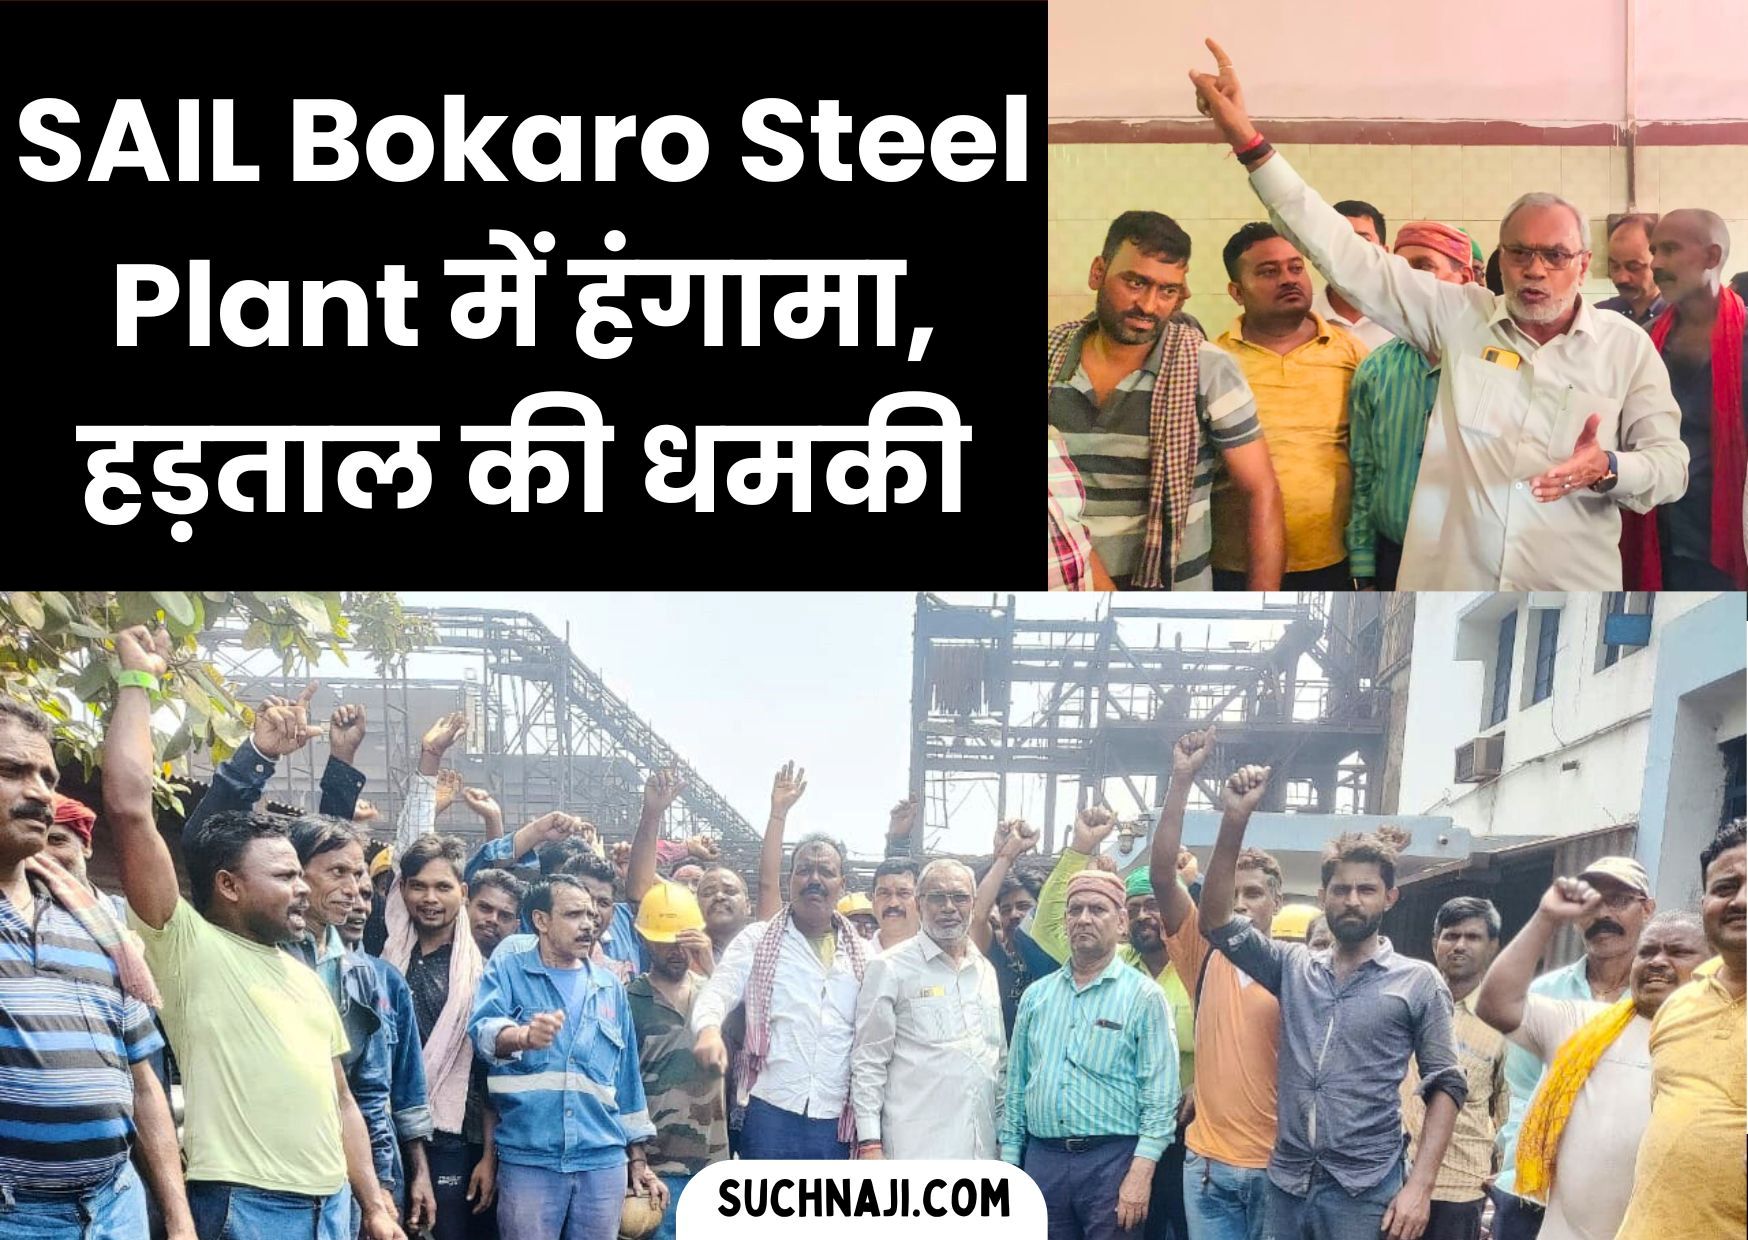 SAIL Bokaro Steel Plant के कोक ओवन में मजदूरों का गुस्सा, अनिश्चितकालीन हड़ताल की धमकी